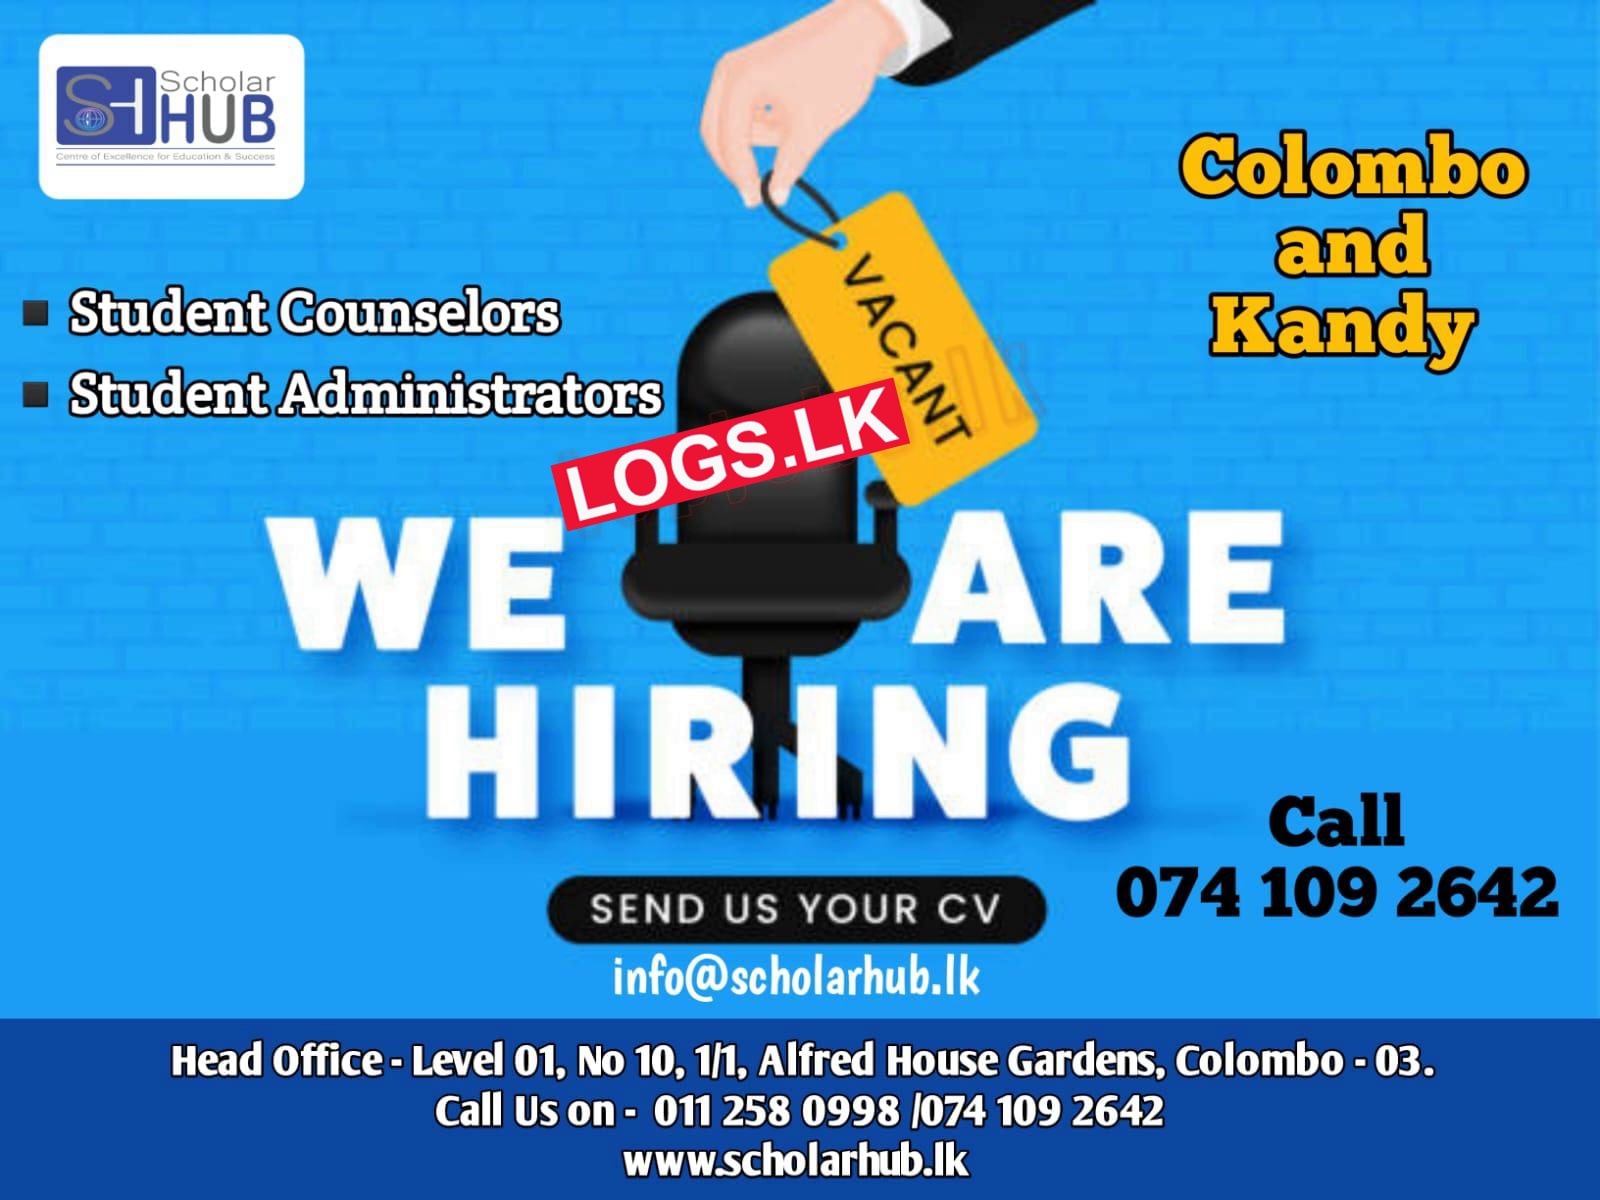 Student Counselors / Administrators Jobs at Scholar Hub (Pvt) Ltd Job Vacancies